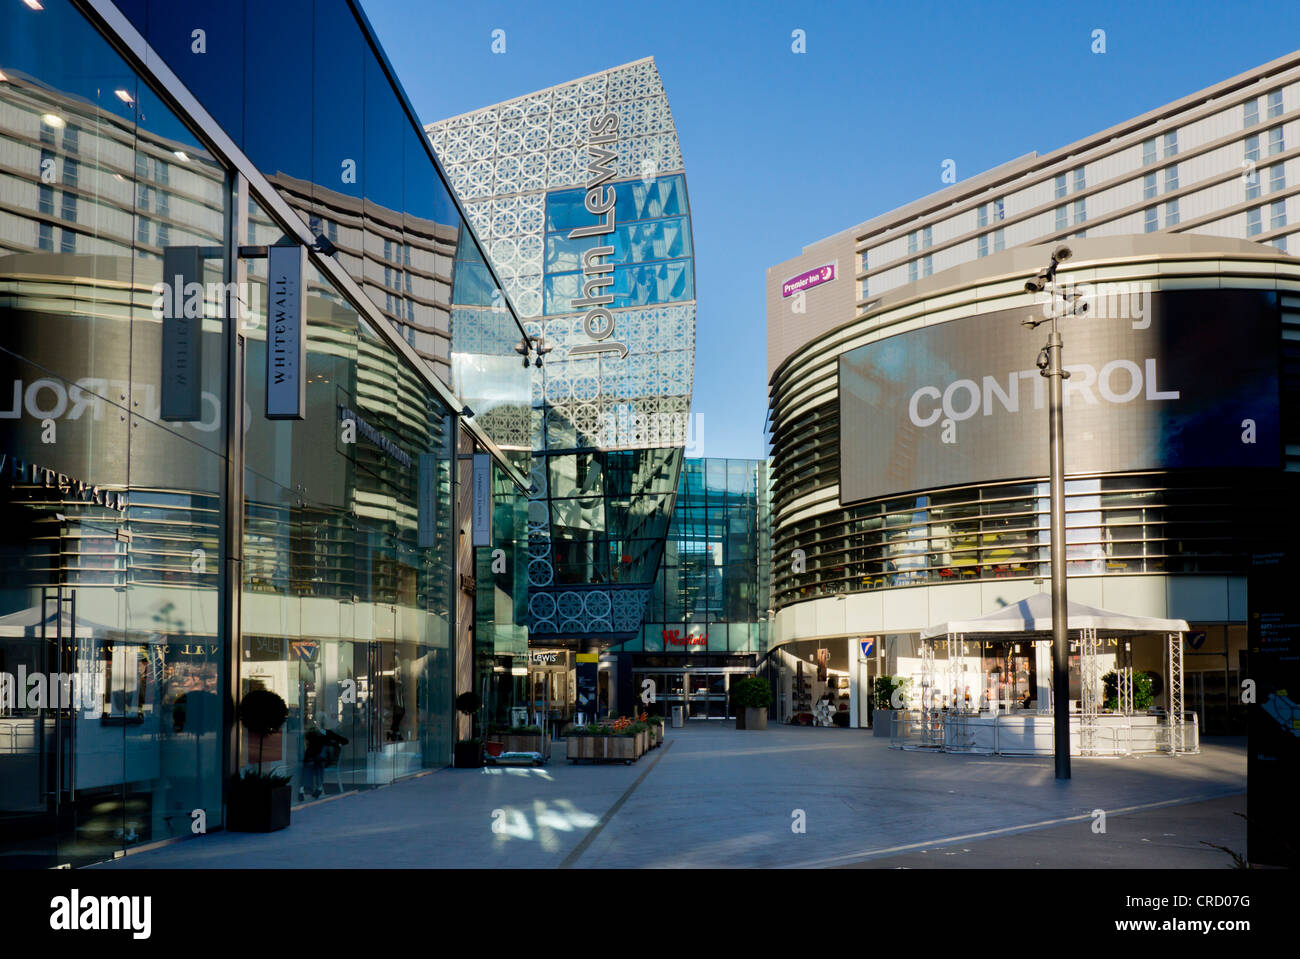 Il centro commerciale Westfield, Stratford, Borough of London, London, England, Regno Unito, Europa Foto Stock